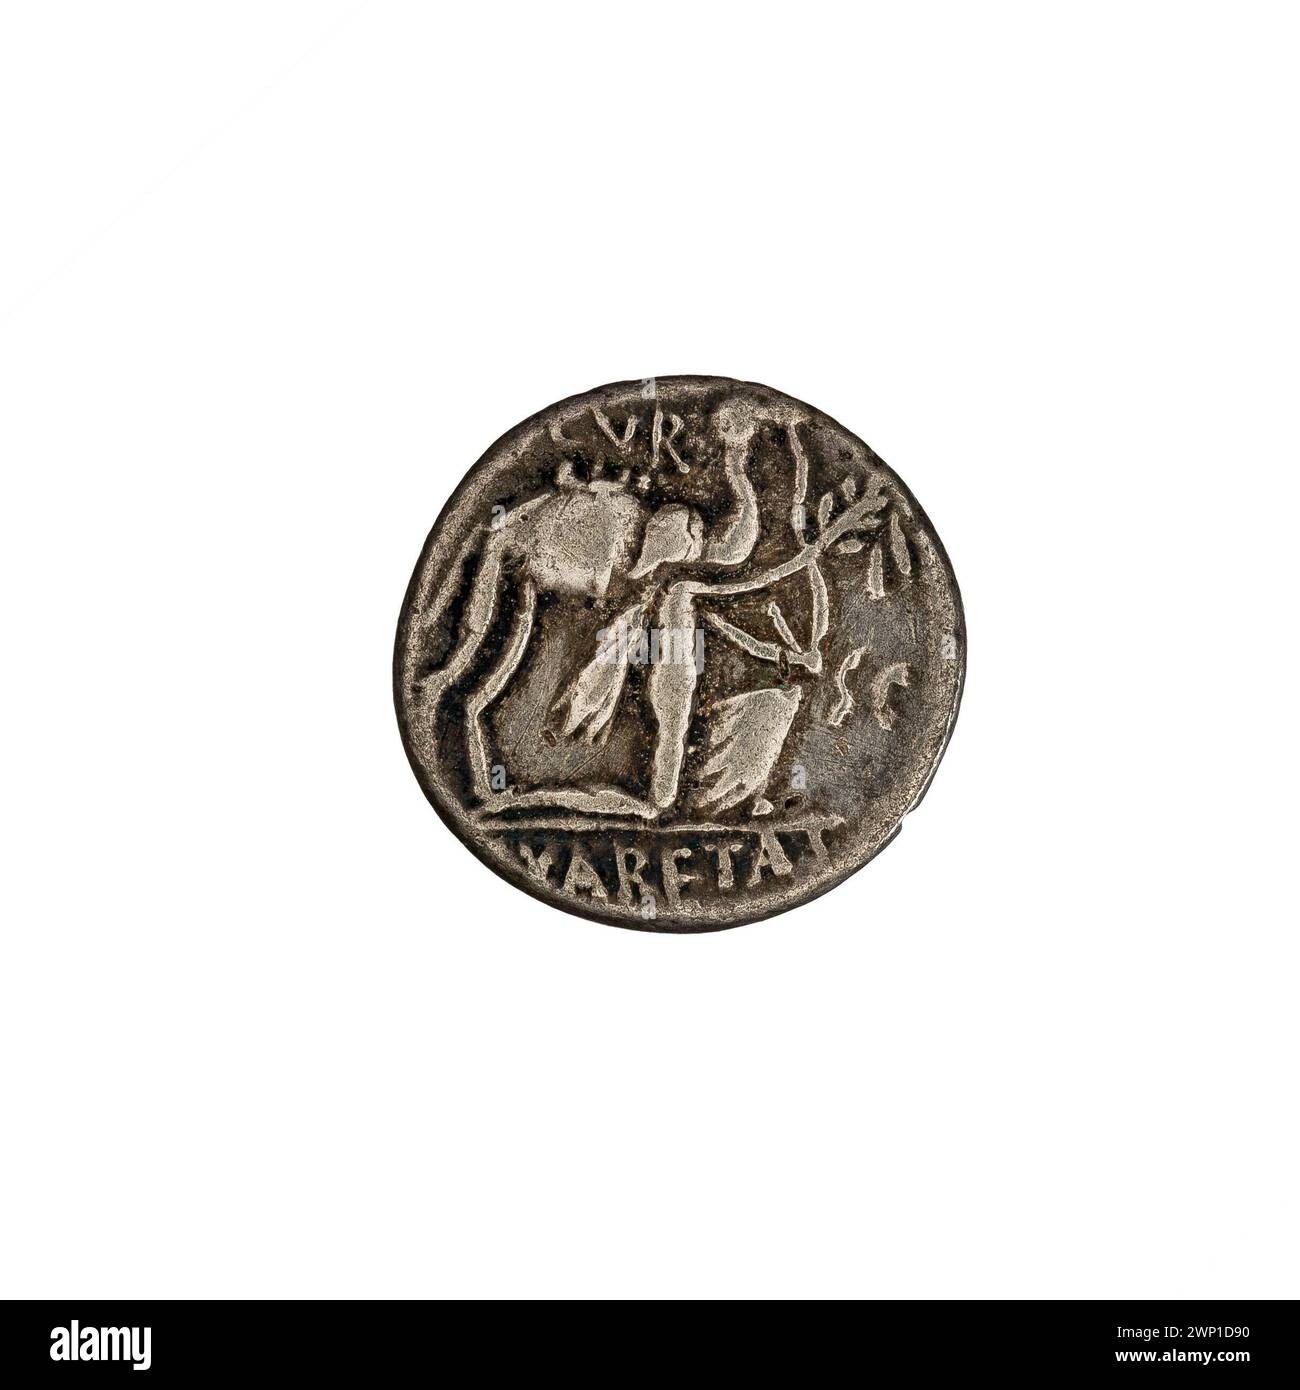 Denar; Aemilius Scaurus, M. (fl. 58 v. Chr.; 56 v. Chr.), Plautius Hypsaeus, P. (fl. 60-58 v. Chr.; 58 v. Chr. (-58-00-00--- 58-00-00);Aretas III (König der Nabatäer - 87-62 n. Chr.) - Ikonographie, Jupiter (Mitol.), Jupiter auf einem Platz (Ikonogr.), staatliche Kunstsammlungen (Warschau - 1922-1939) - Sammlungen, Olivenzweige, Pferde, Quadrat, Blitz (Blitz (Attribut), kniende Zeichen, Botschaft (Provenienz), Skorpione, Kamele Stockfoto